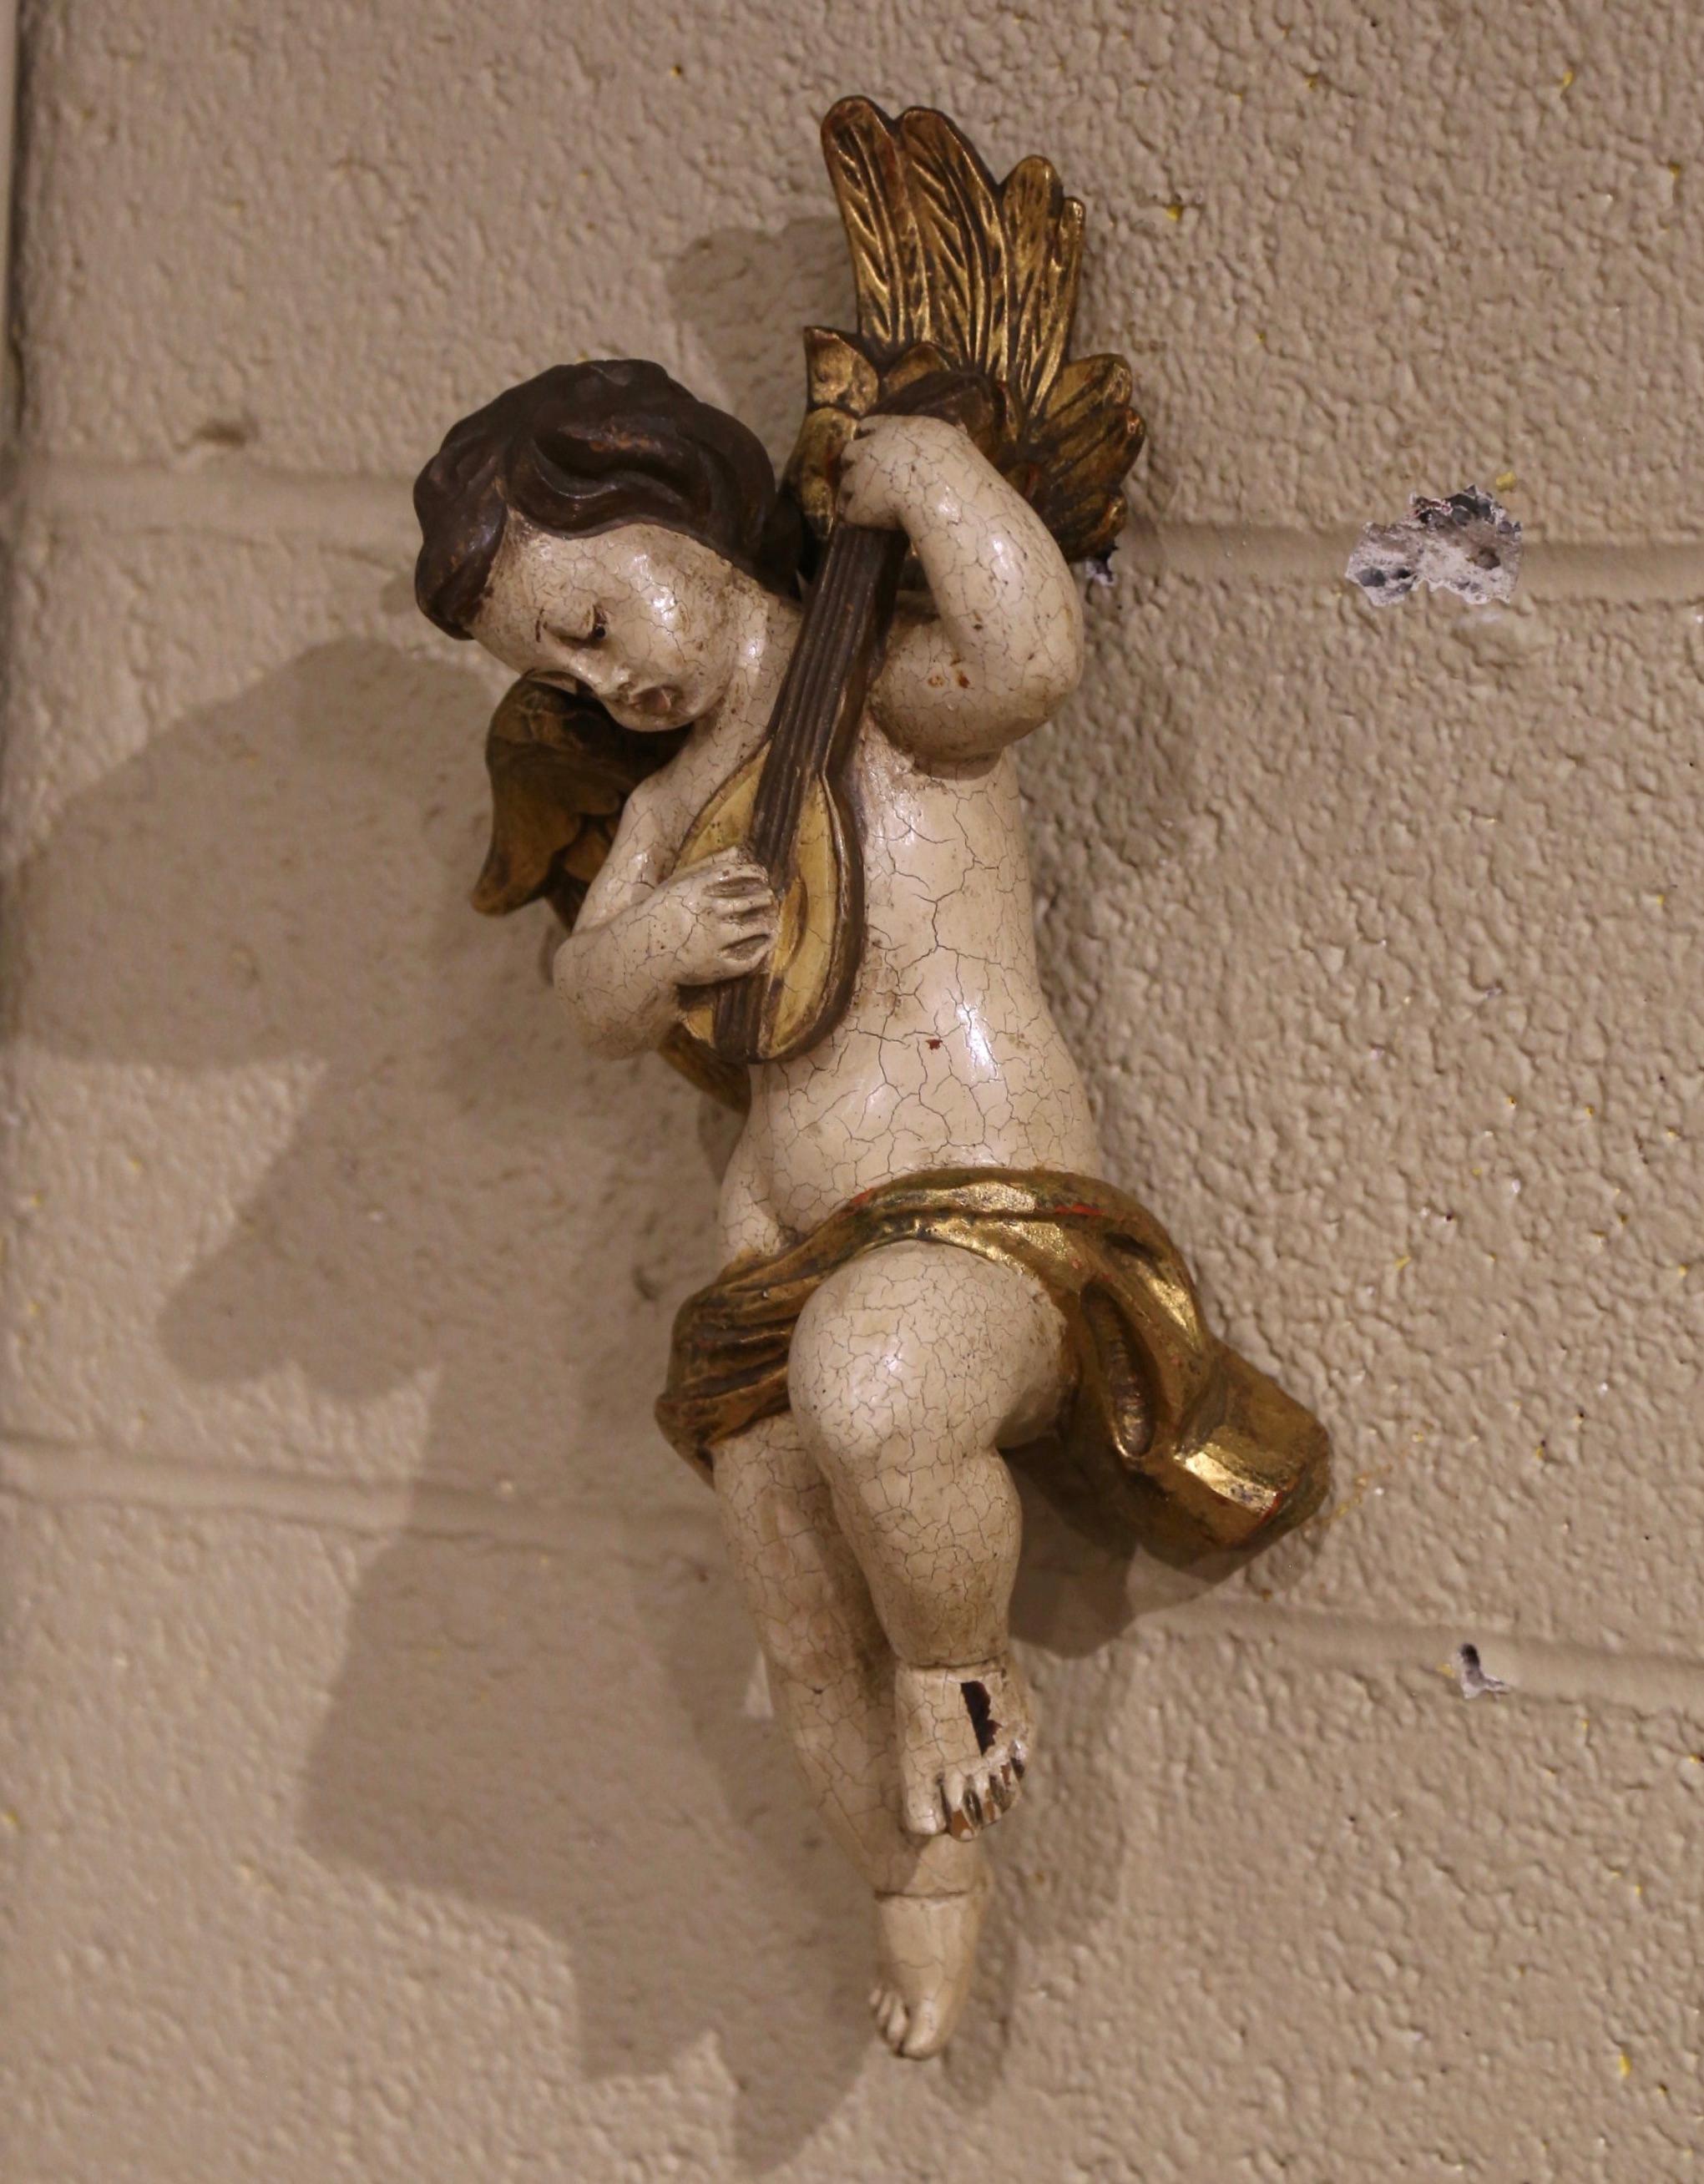 Diese antike Cherub-Figur wurde um 1780 in Italien hergestellt. Der handgeschnitzte Cherub stellt eine Putte mit Flügeln dar, die Gitarre spielt; die Skulptur ist sehr ausdrucksstark in ihren Bewegungen und zeigt wunderbare Gesichtsausdrücke. Die